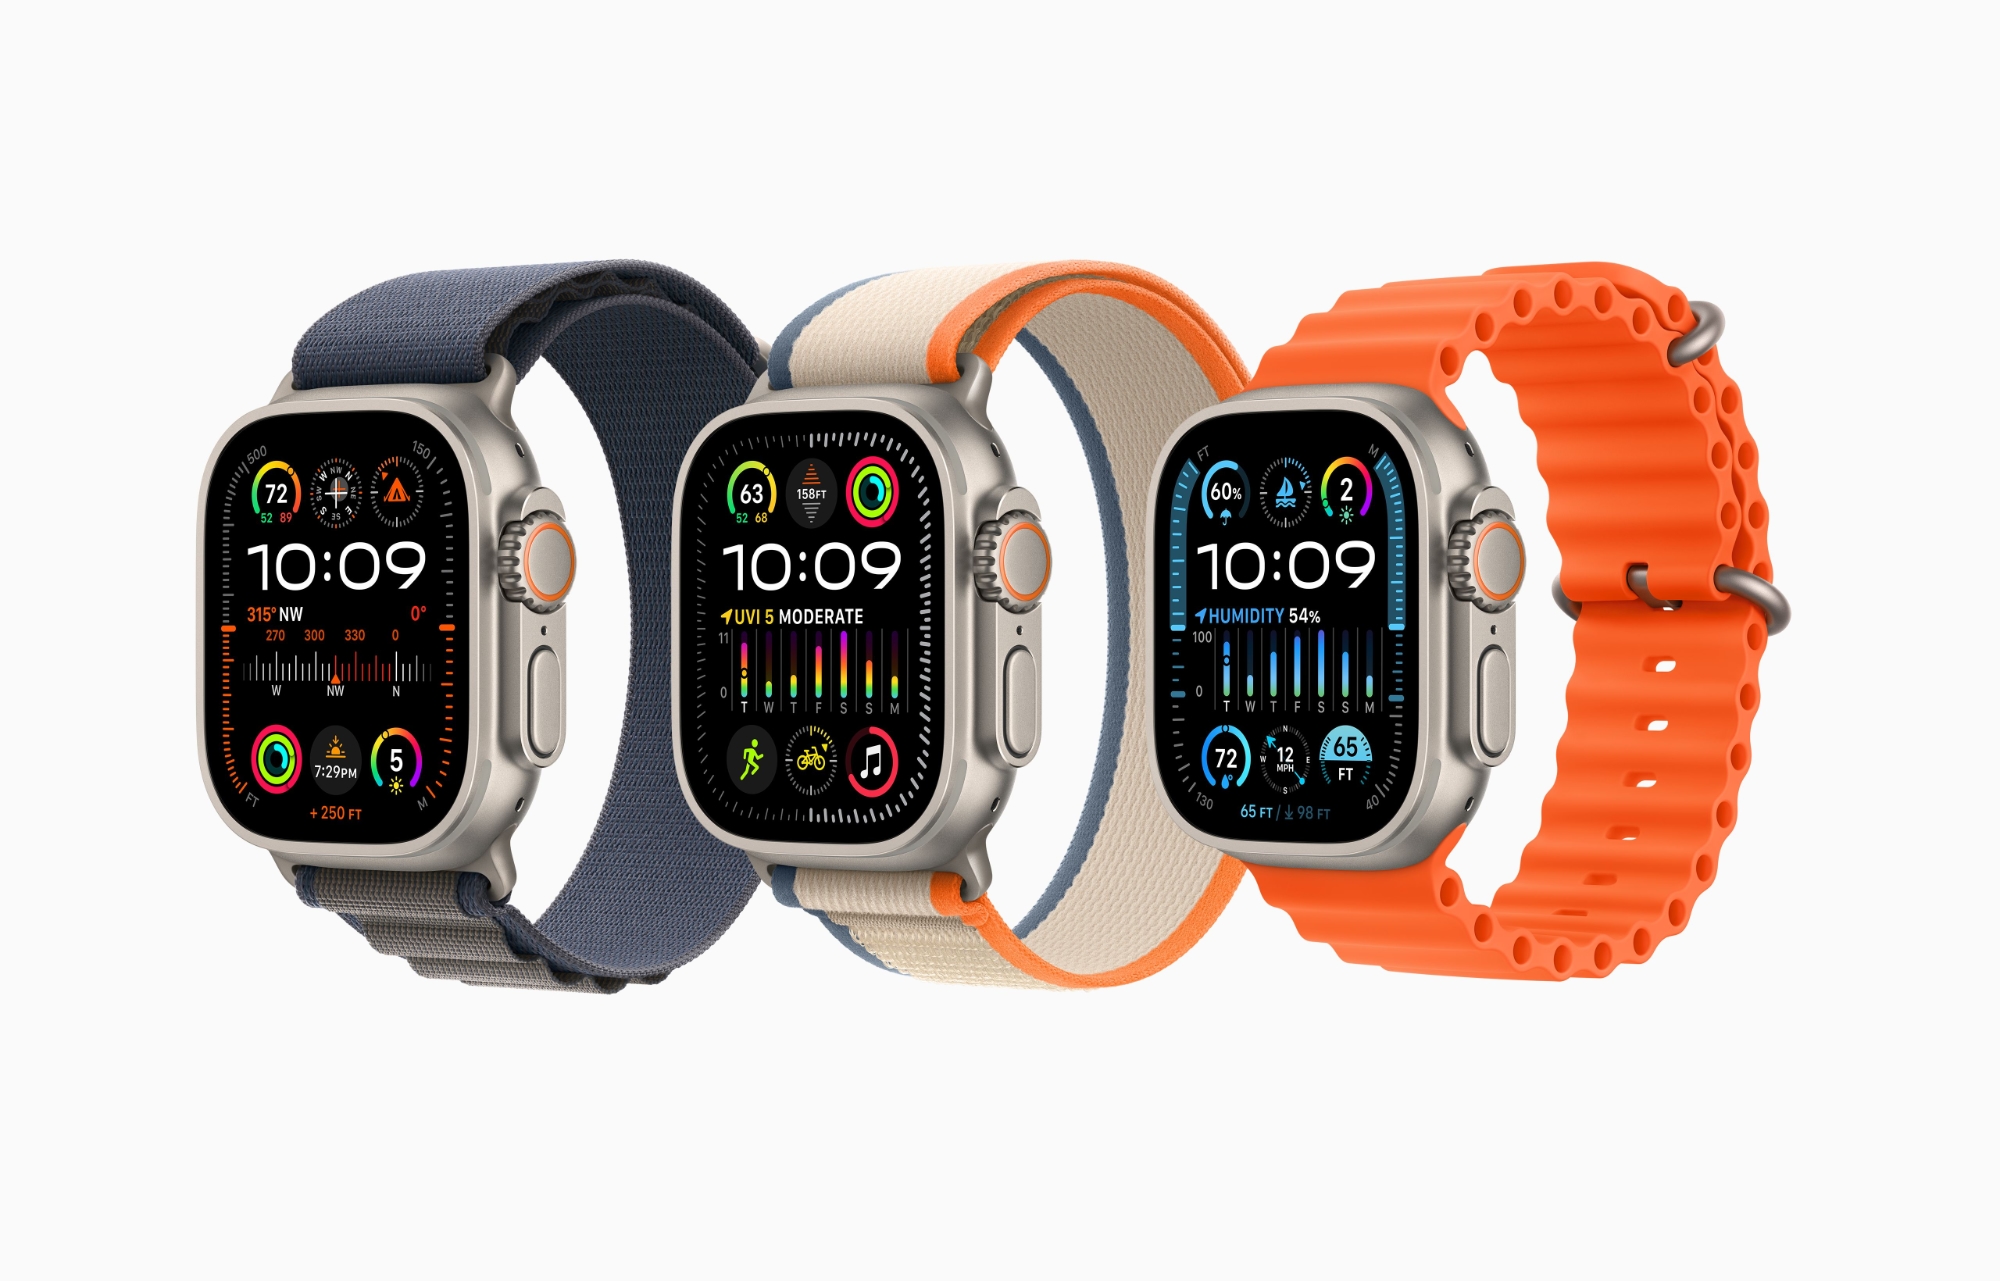 El Apple Watch Ultra 2 se puede comprar en Amazon con un descuento de 75 dólares